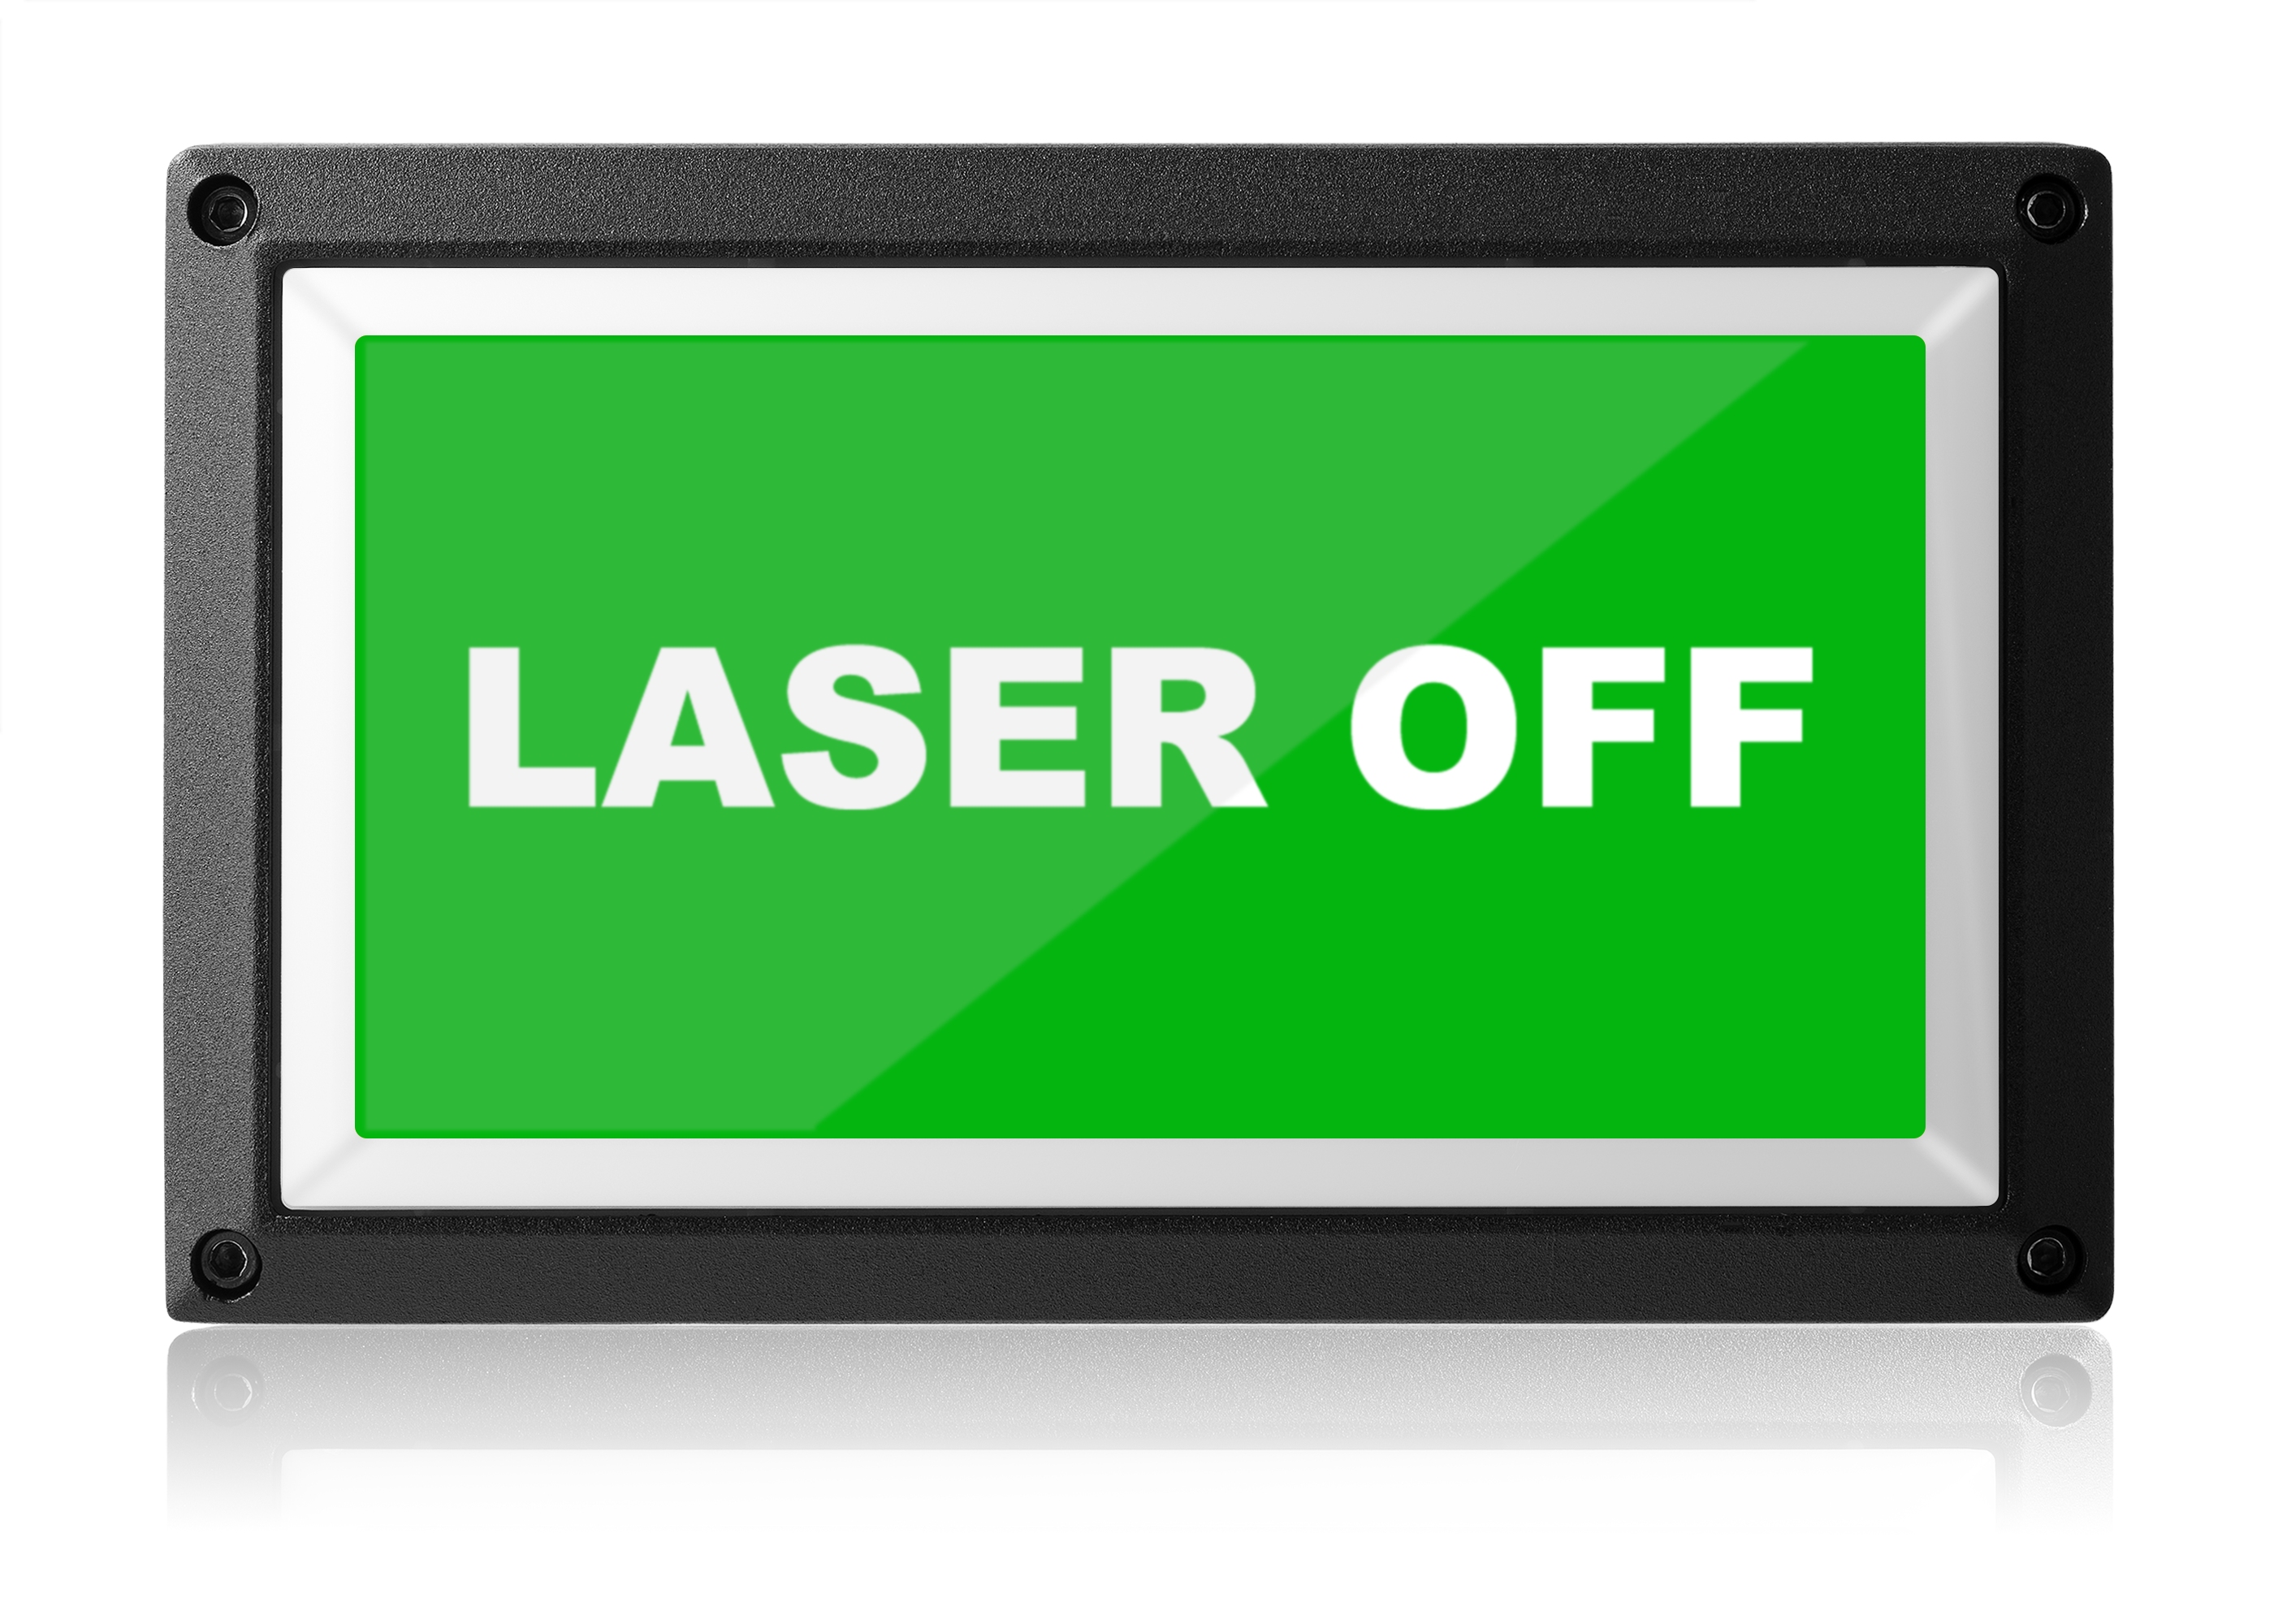 laser off light - led warning sign